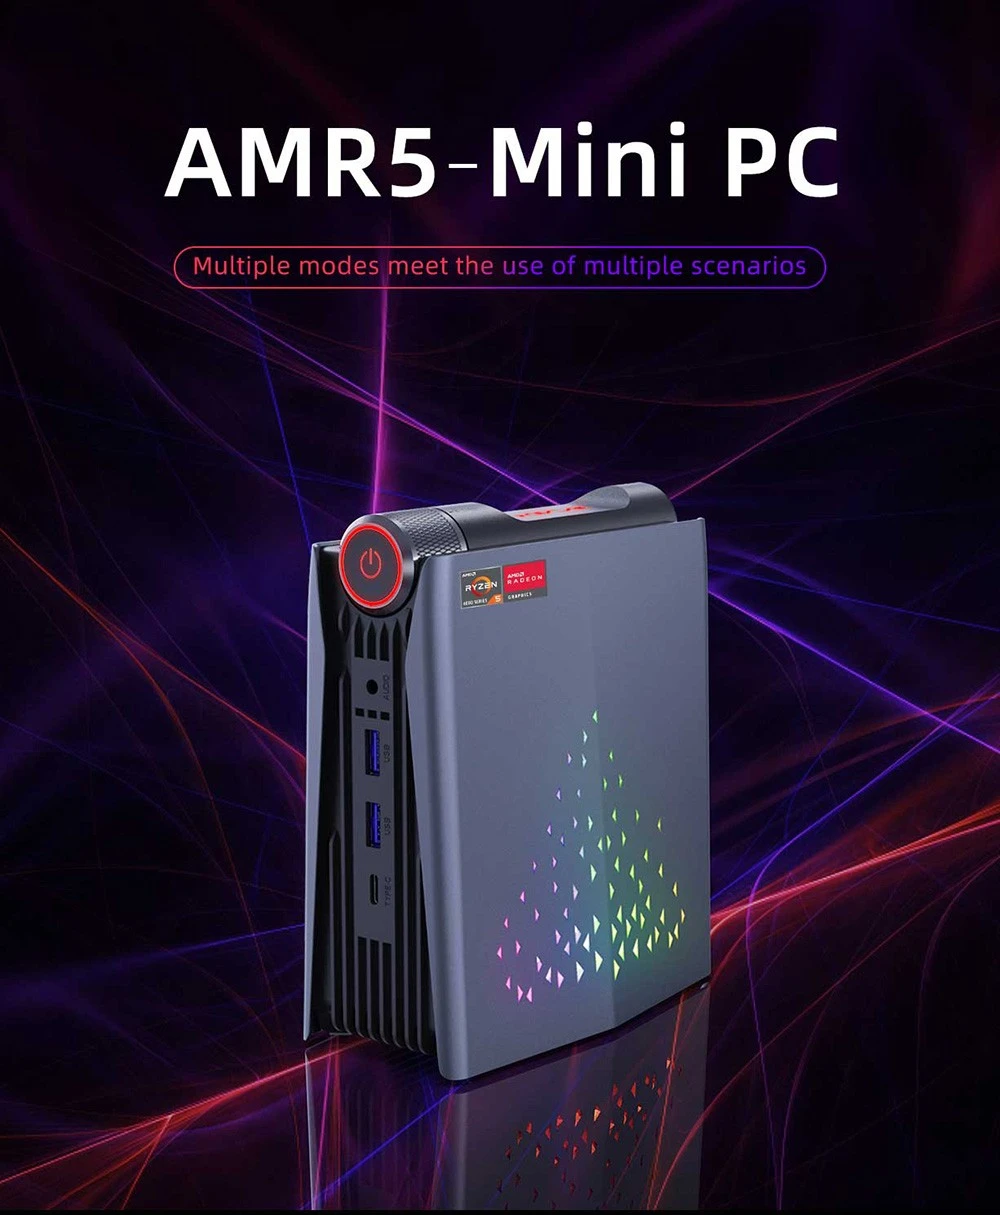 Geekbuying : OUVIS AMR5 Mini PC AMD Ryzen 5 5700U (16 Go DDR4 & 512 Go SSD)  à 274,61 € (boutique) et avec livraison gratuite - Actualités par Xiaomi  Miui Hellas